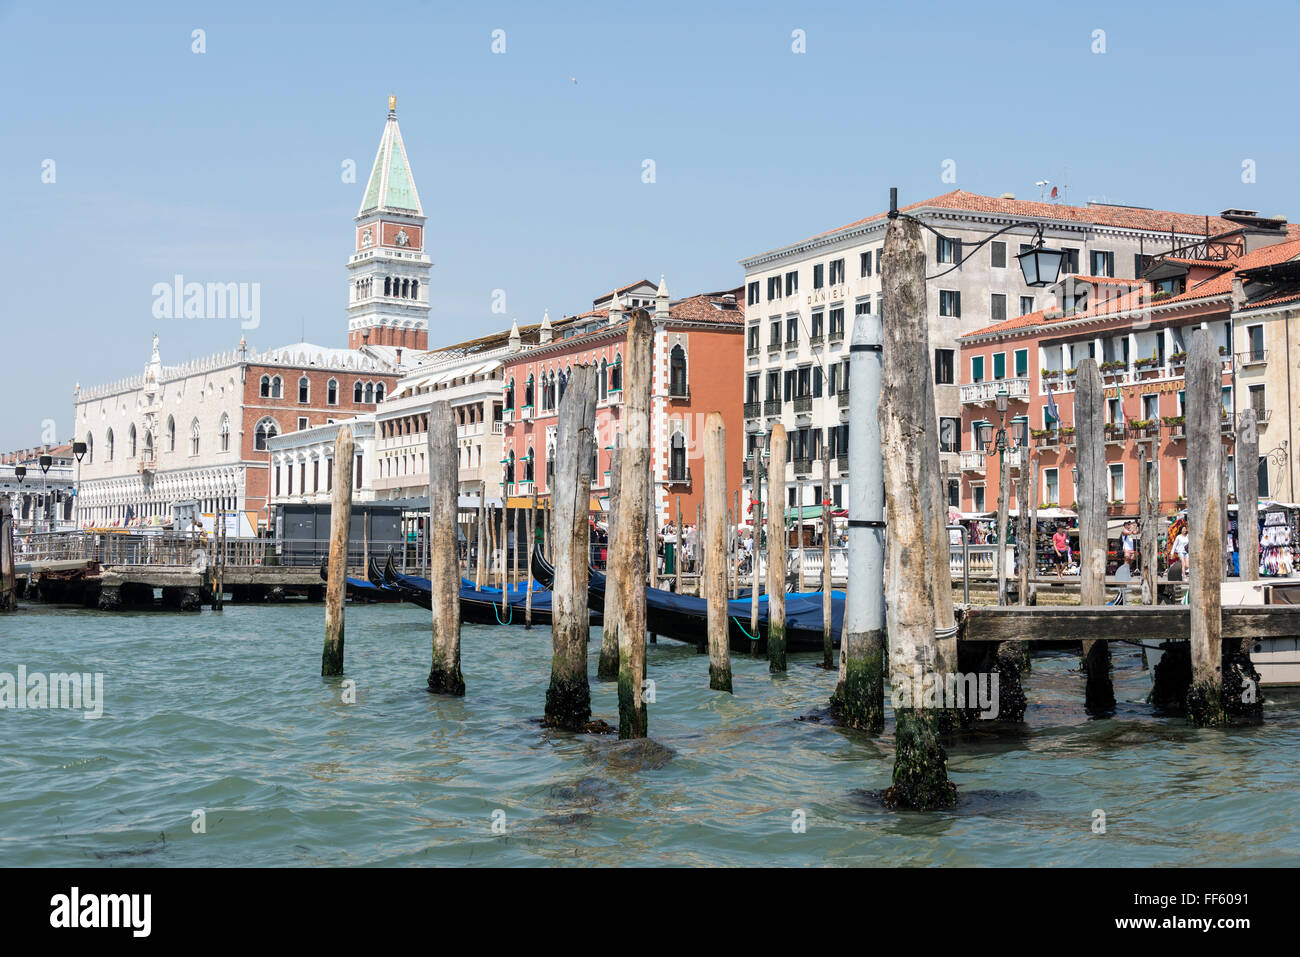 Sulla Riva degli Schiavoni che corre lungo la riva della laguna veneta a Venezia, Italia, Foto Stock